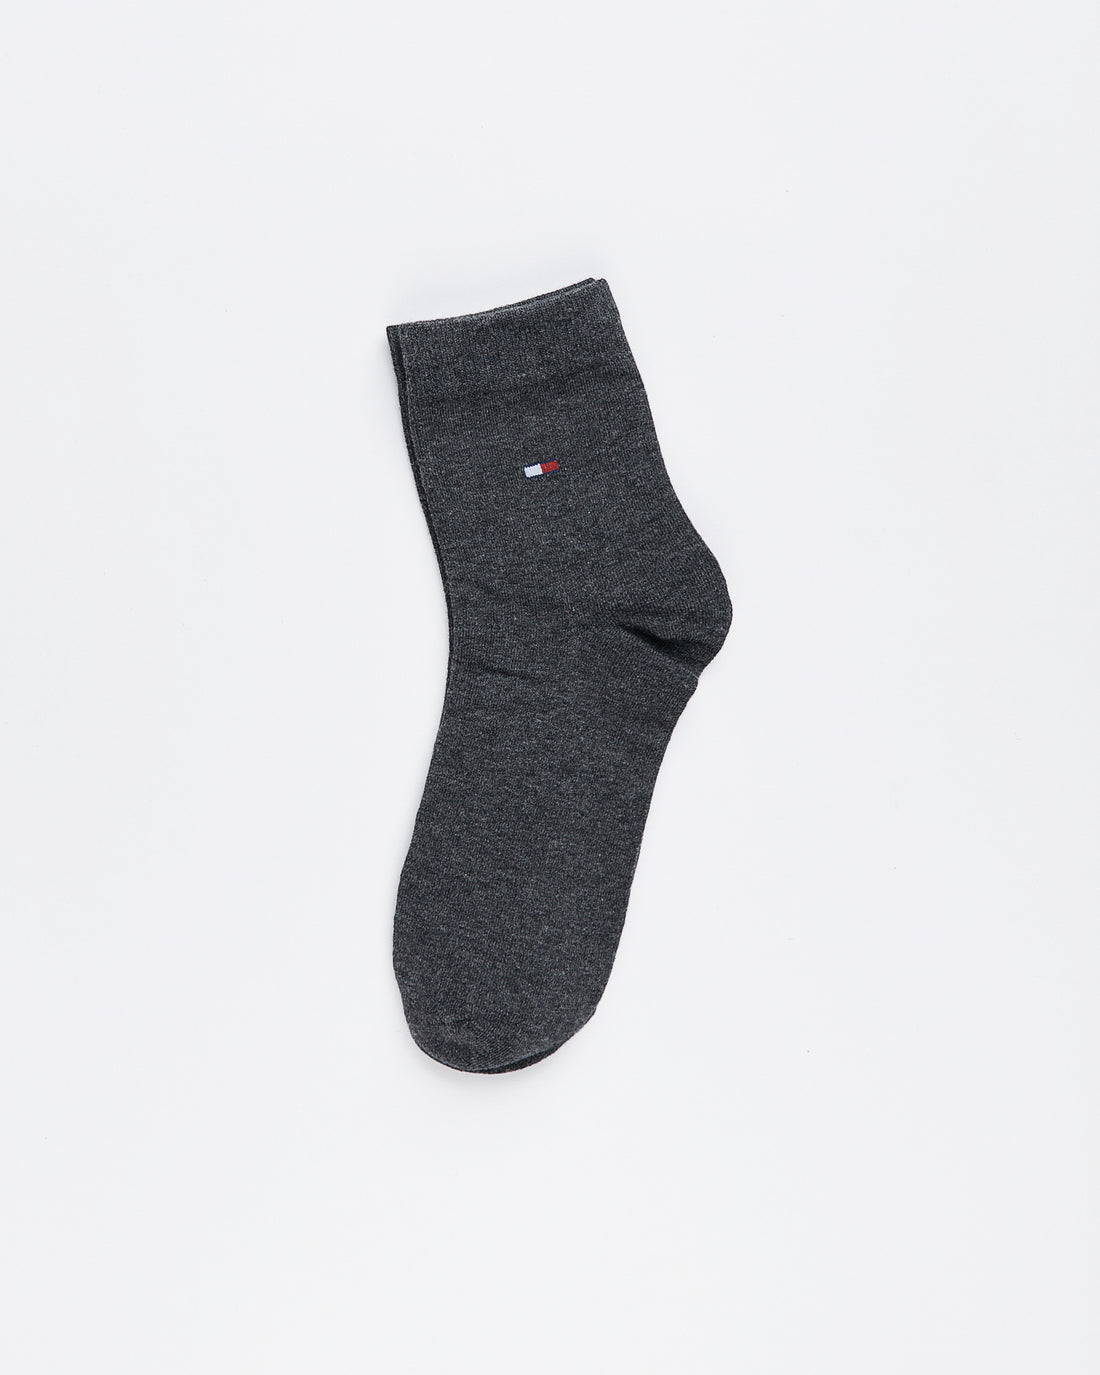 TH Plain Color Quarter 5 Pairs Socks 14.90